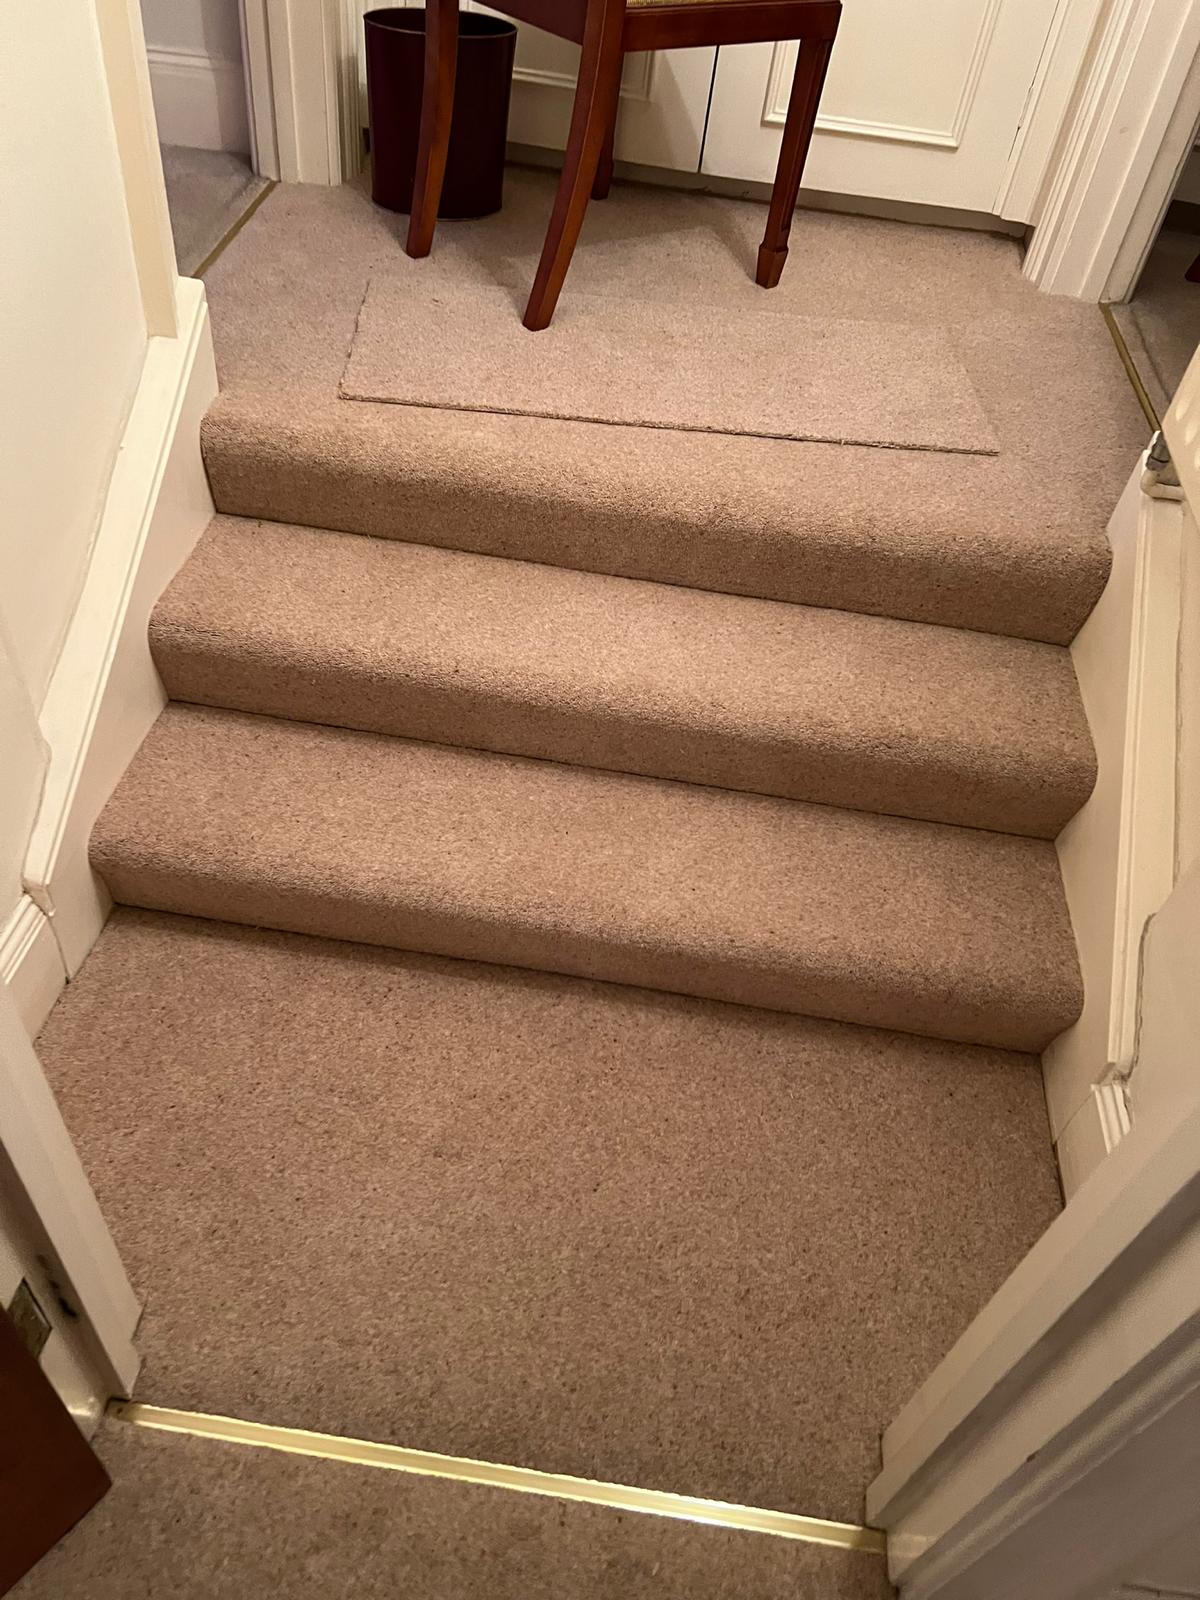 avonvale-carpets-bath-flooring-cavalier-pennine-wool-edgeworth-stairs